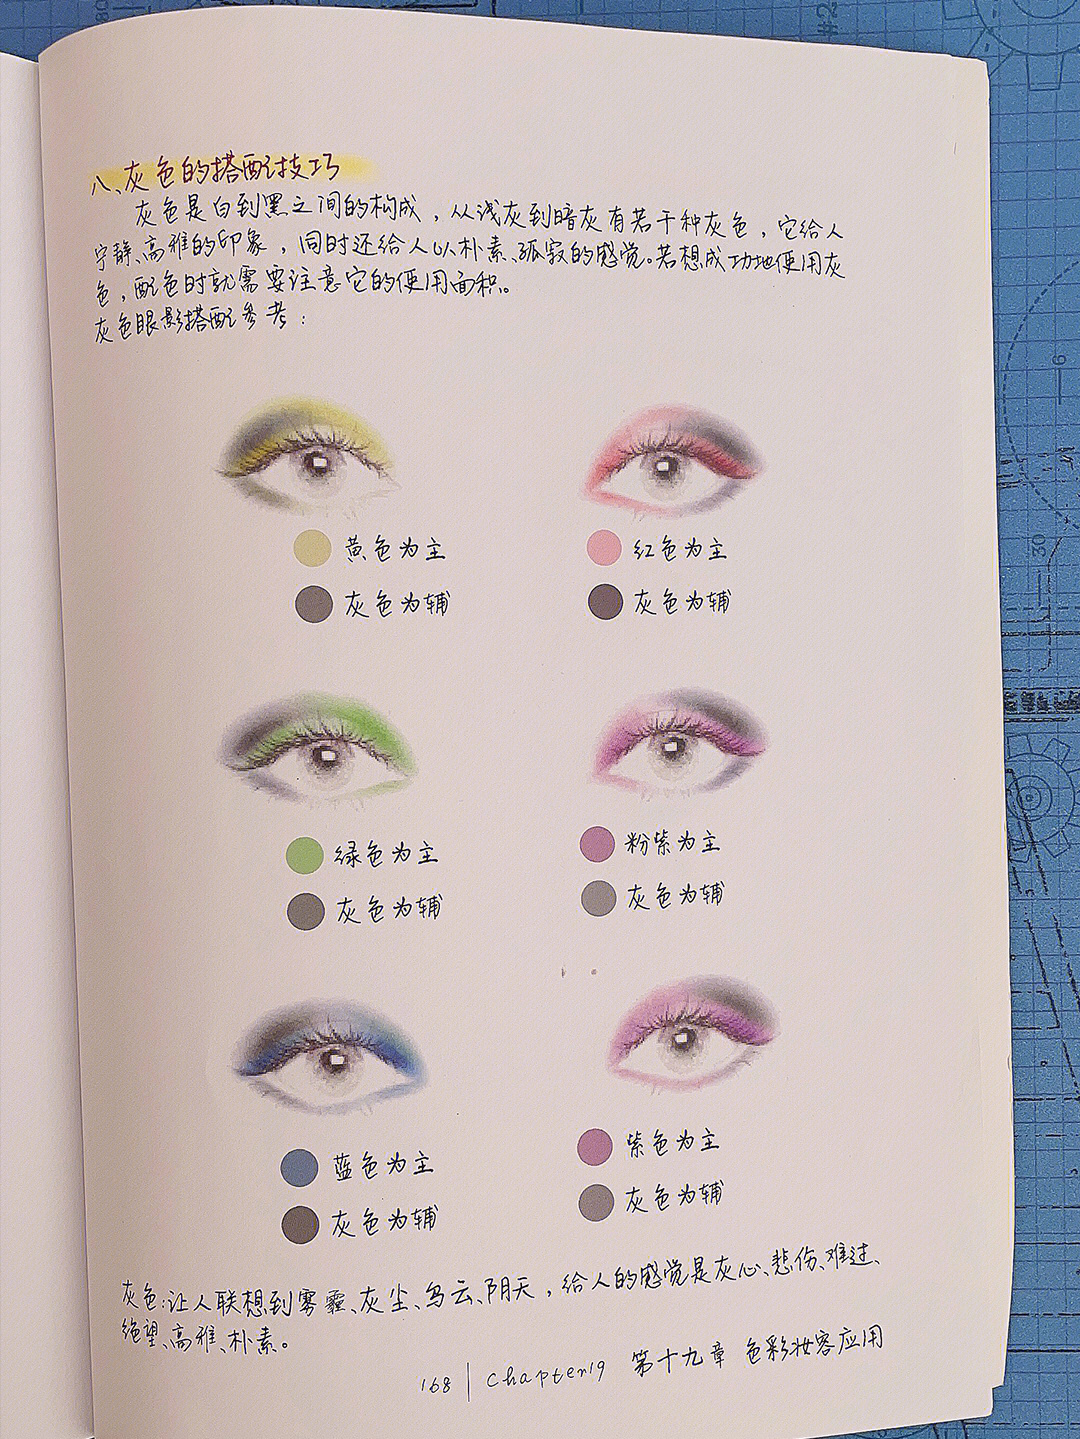 化妆师要学的9大眼影色彩搭配技巧整理完成